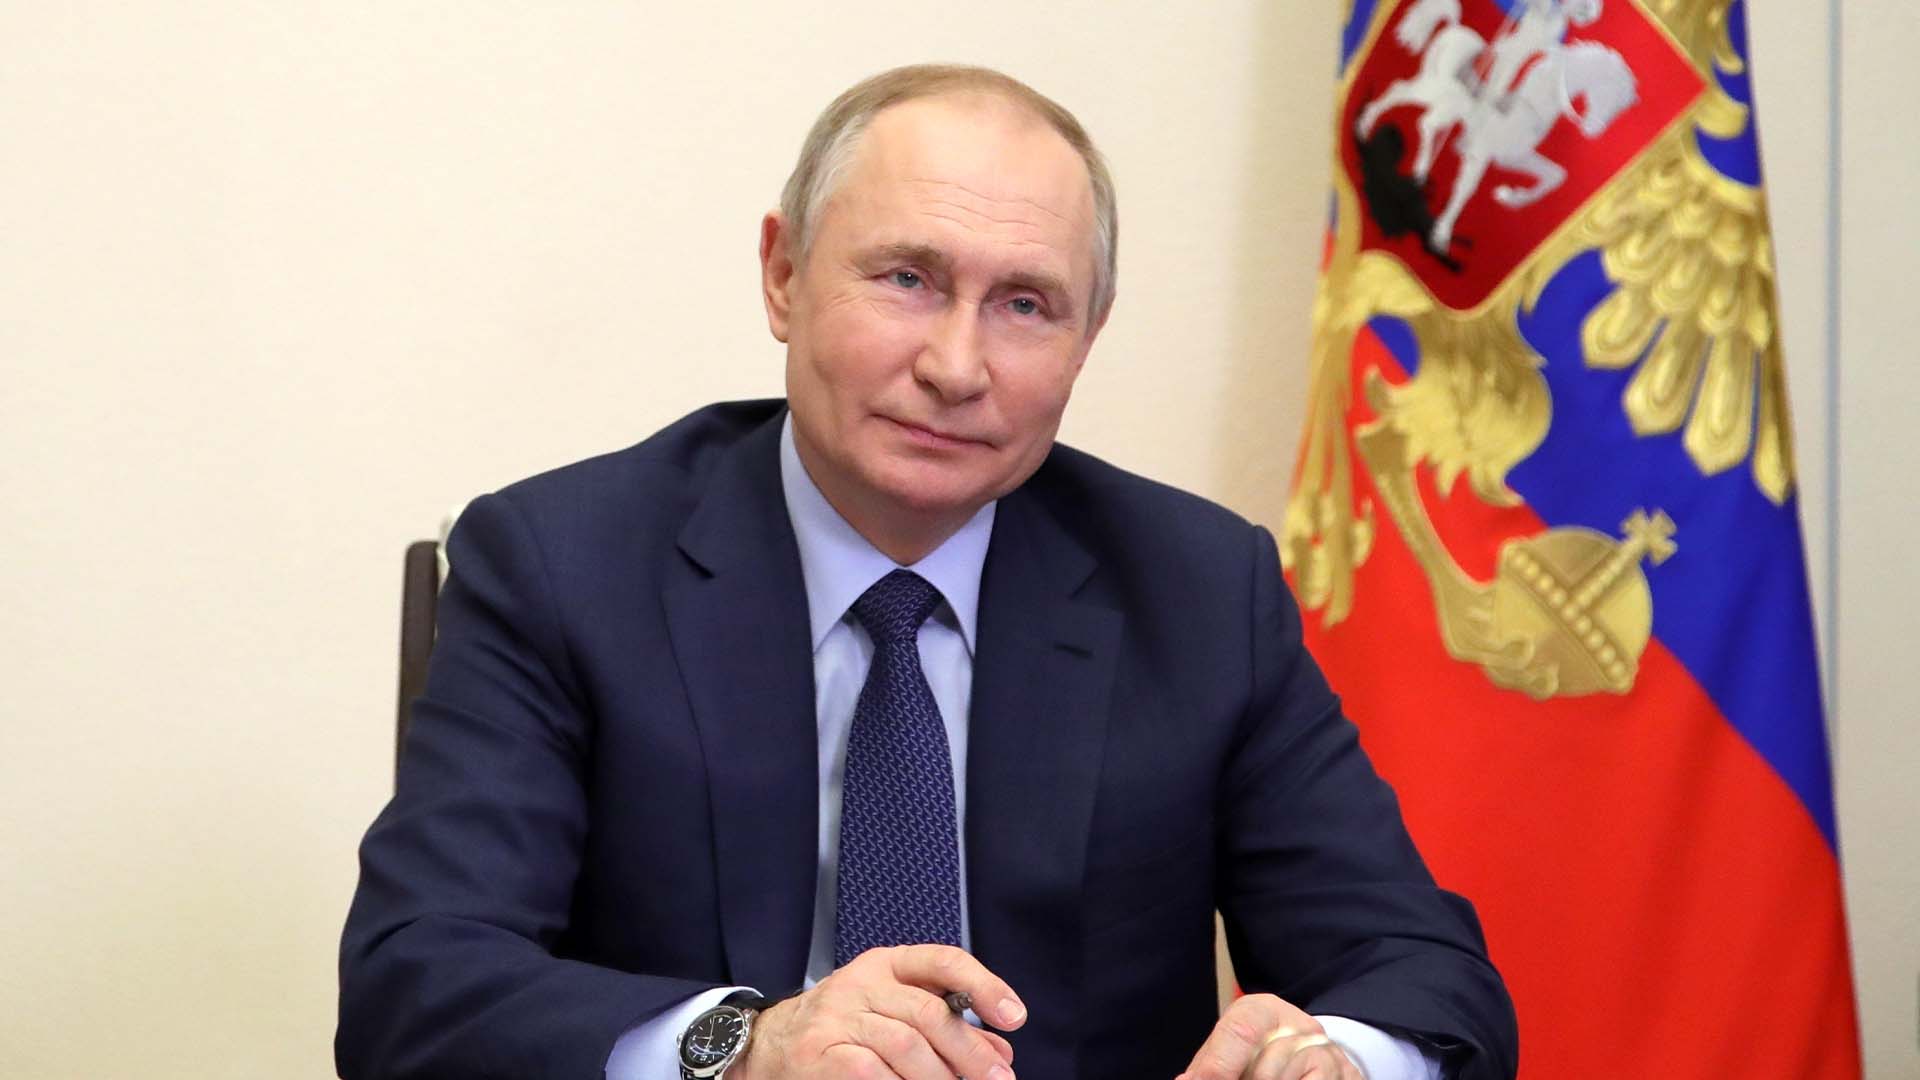 Le président russe Vladimir Poutine